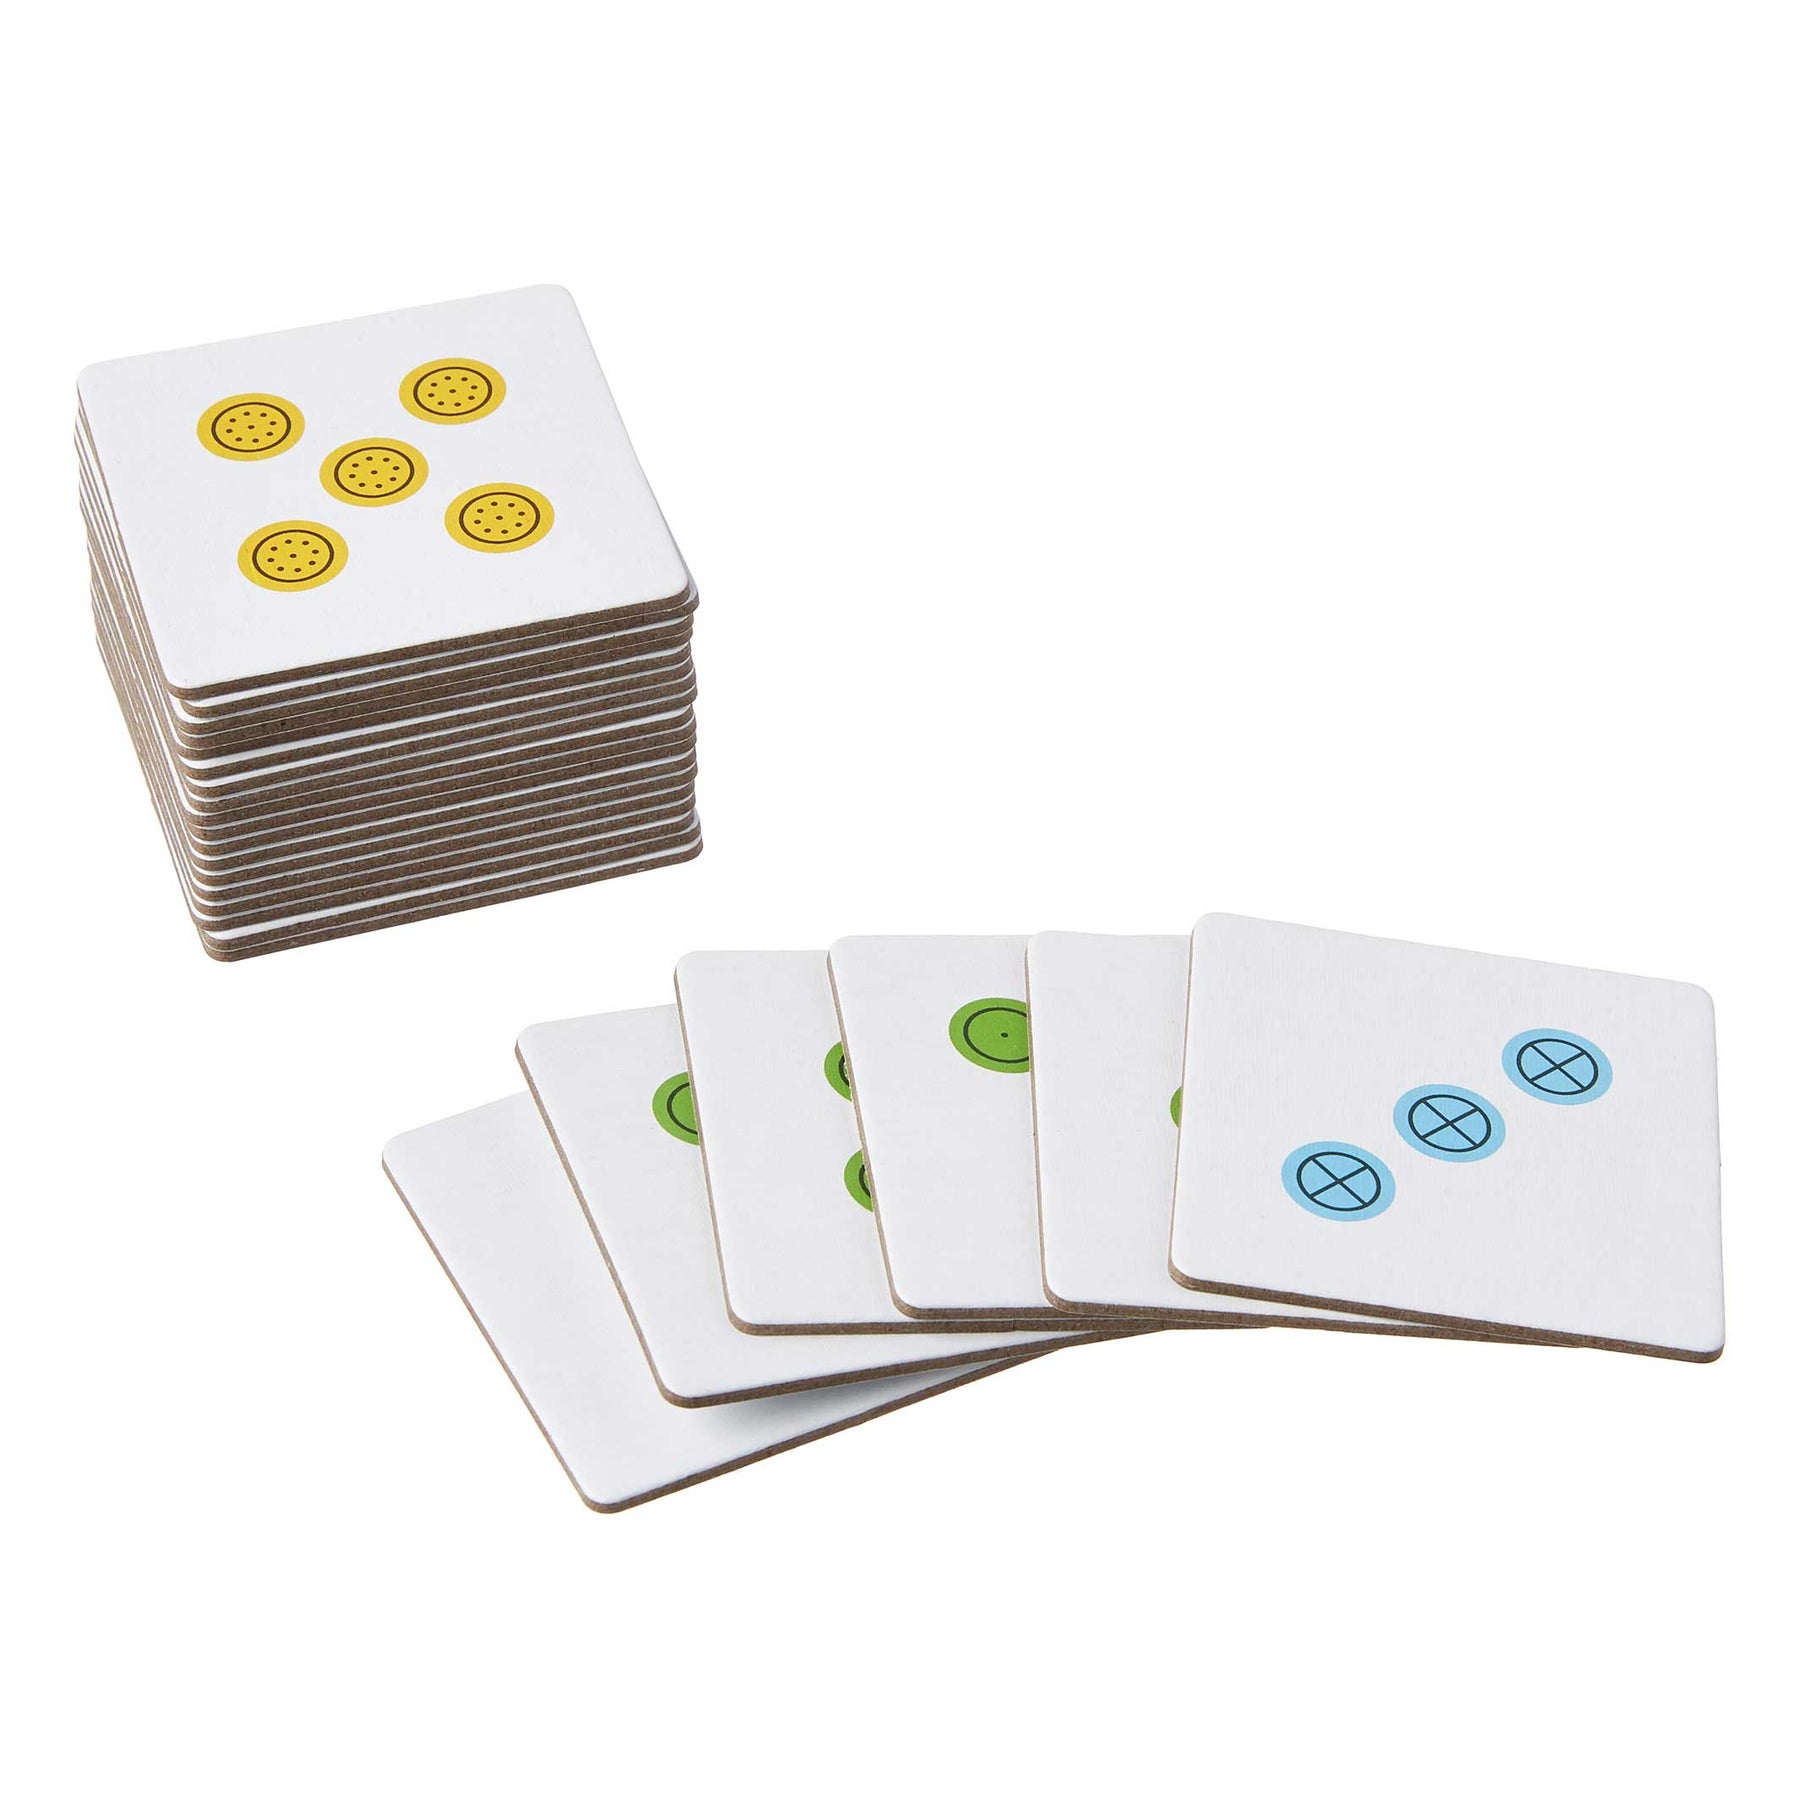 Brailled Skip-Bo Card Game